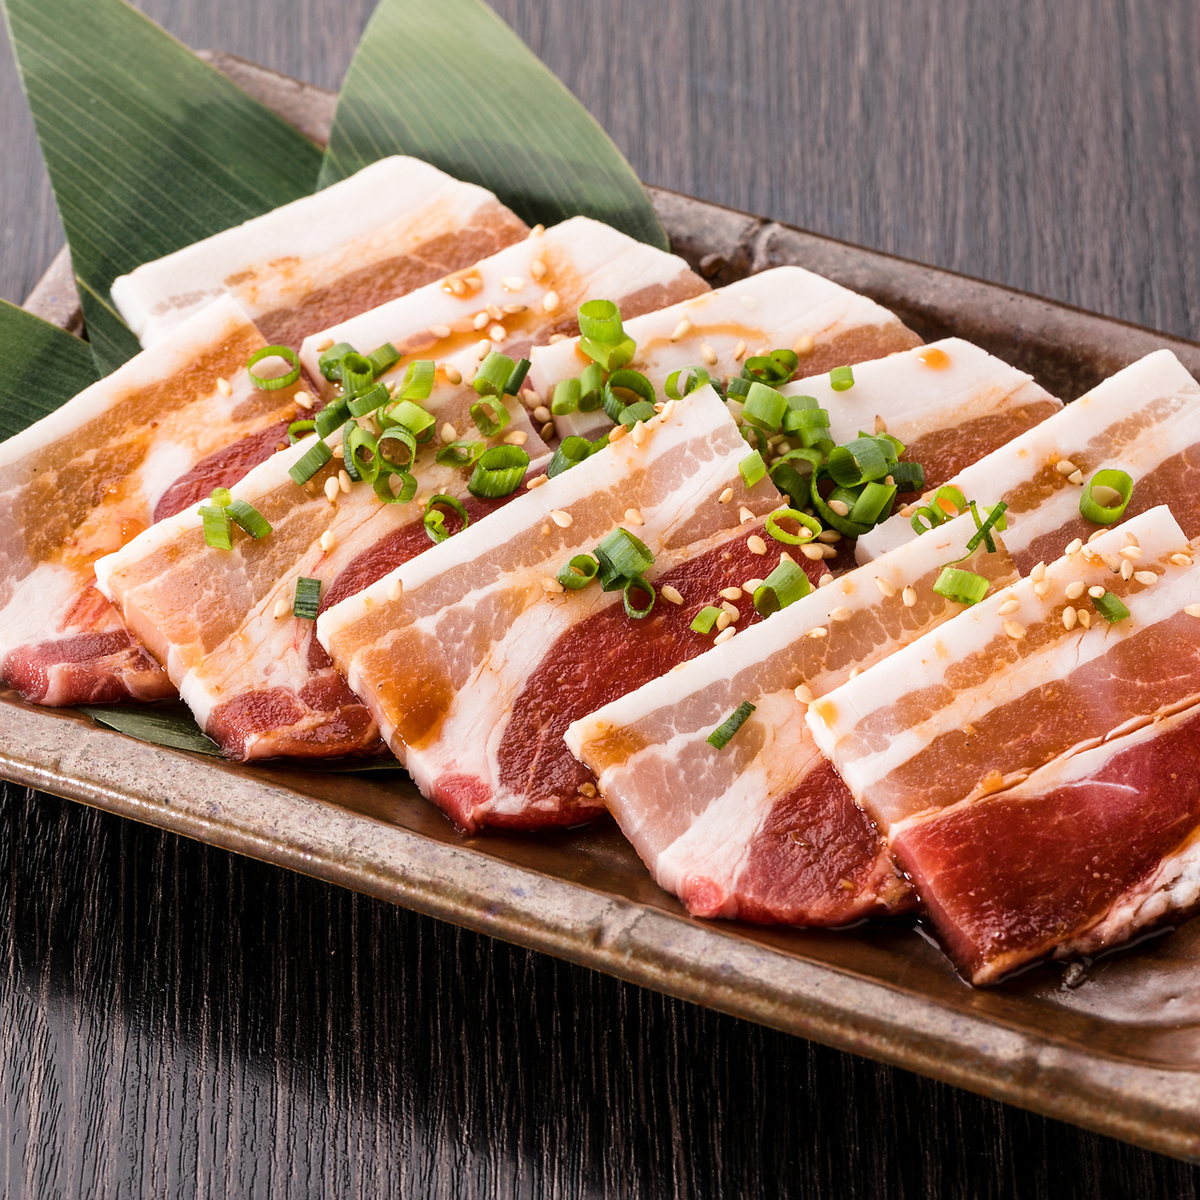 渋谷 ランチで行くべき 肉 の食べ放題5選 鶏も豚も牛もラム肉も Favy ファビー